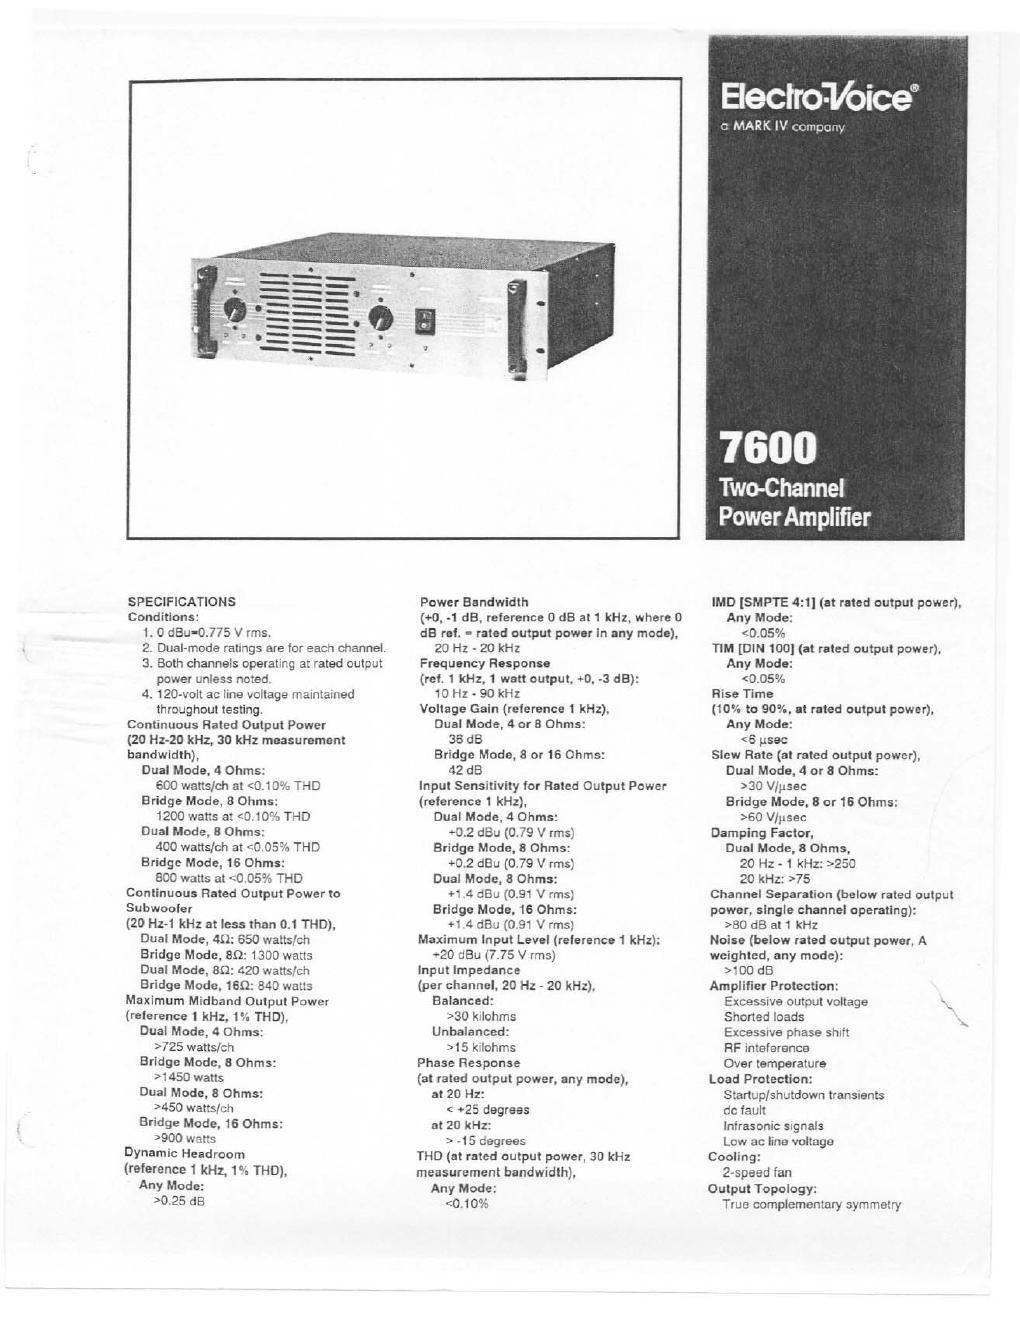 electro voice 7600 brochure